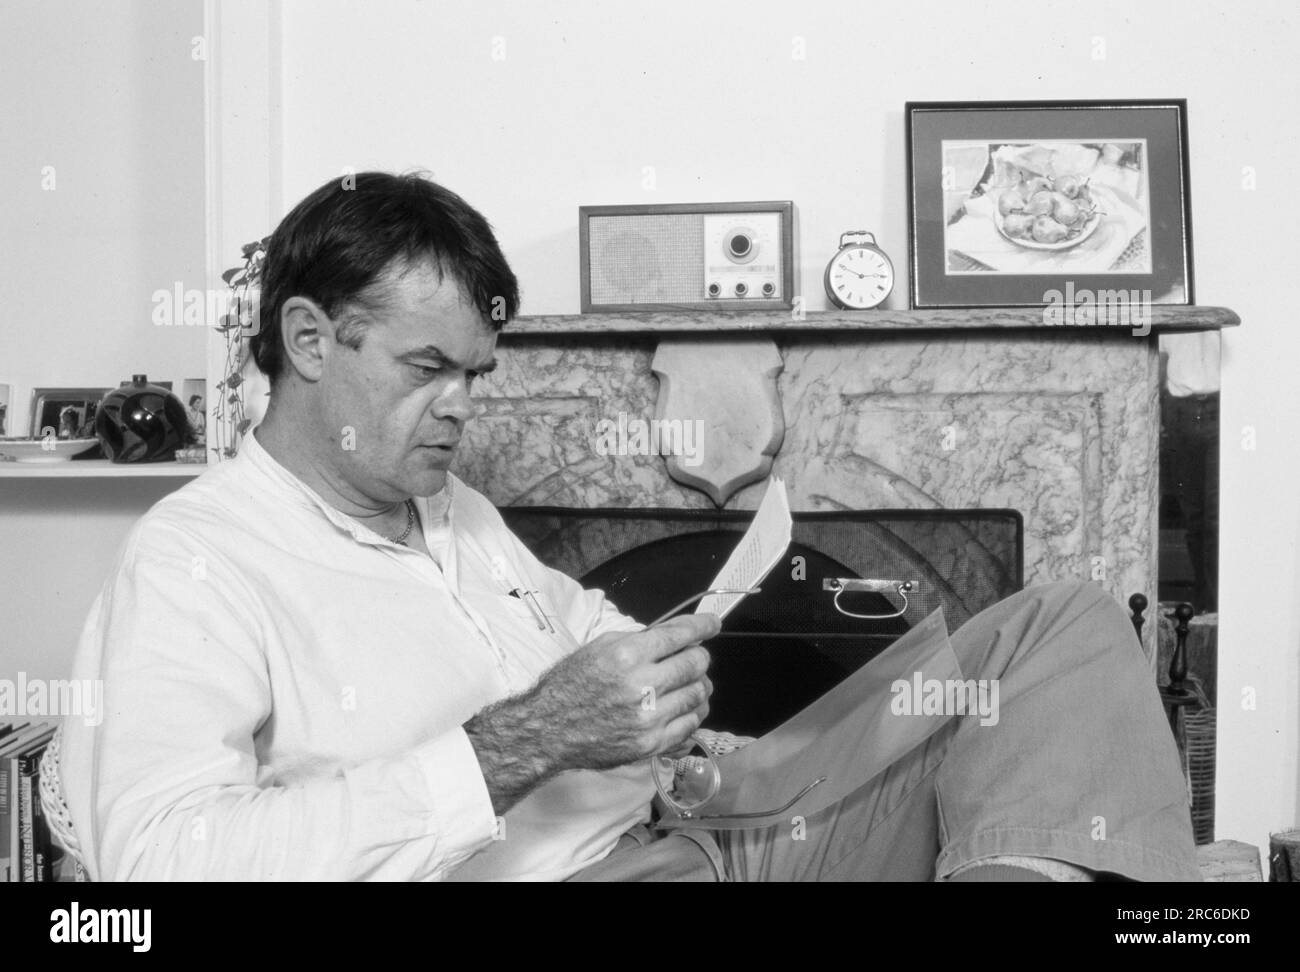 Garnison Keillor, 1987 ans. Gary Edward 'Garrison' Keillor (7 août 1942) est un auteur, chanteur, humoriste, acteur vocal et personnalité de la radio américaine. Il crée l'émission A Prairie Home Companion de la radio publique du Minnesota (appelée Garrison Keillor's radio Show dans une syndication internationale), qu'il anime de 1974 à 2016. Keillor a créé la ville fictive du Minnesota Lake Wobegon, le décor de plusieurs de ses livres, dont Lake Wobegon Days et Leaving Home : a Collection of Lake Wobegon Stories. Photographie de Bernard Gotfryd Banque D'Images